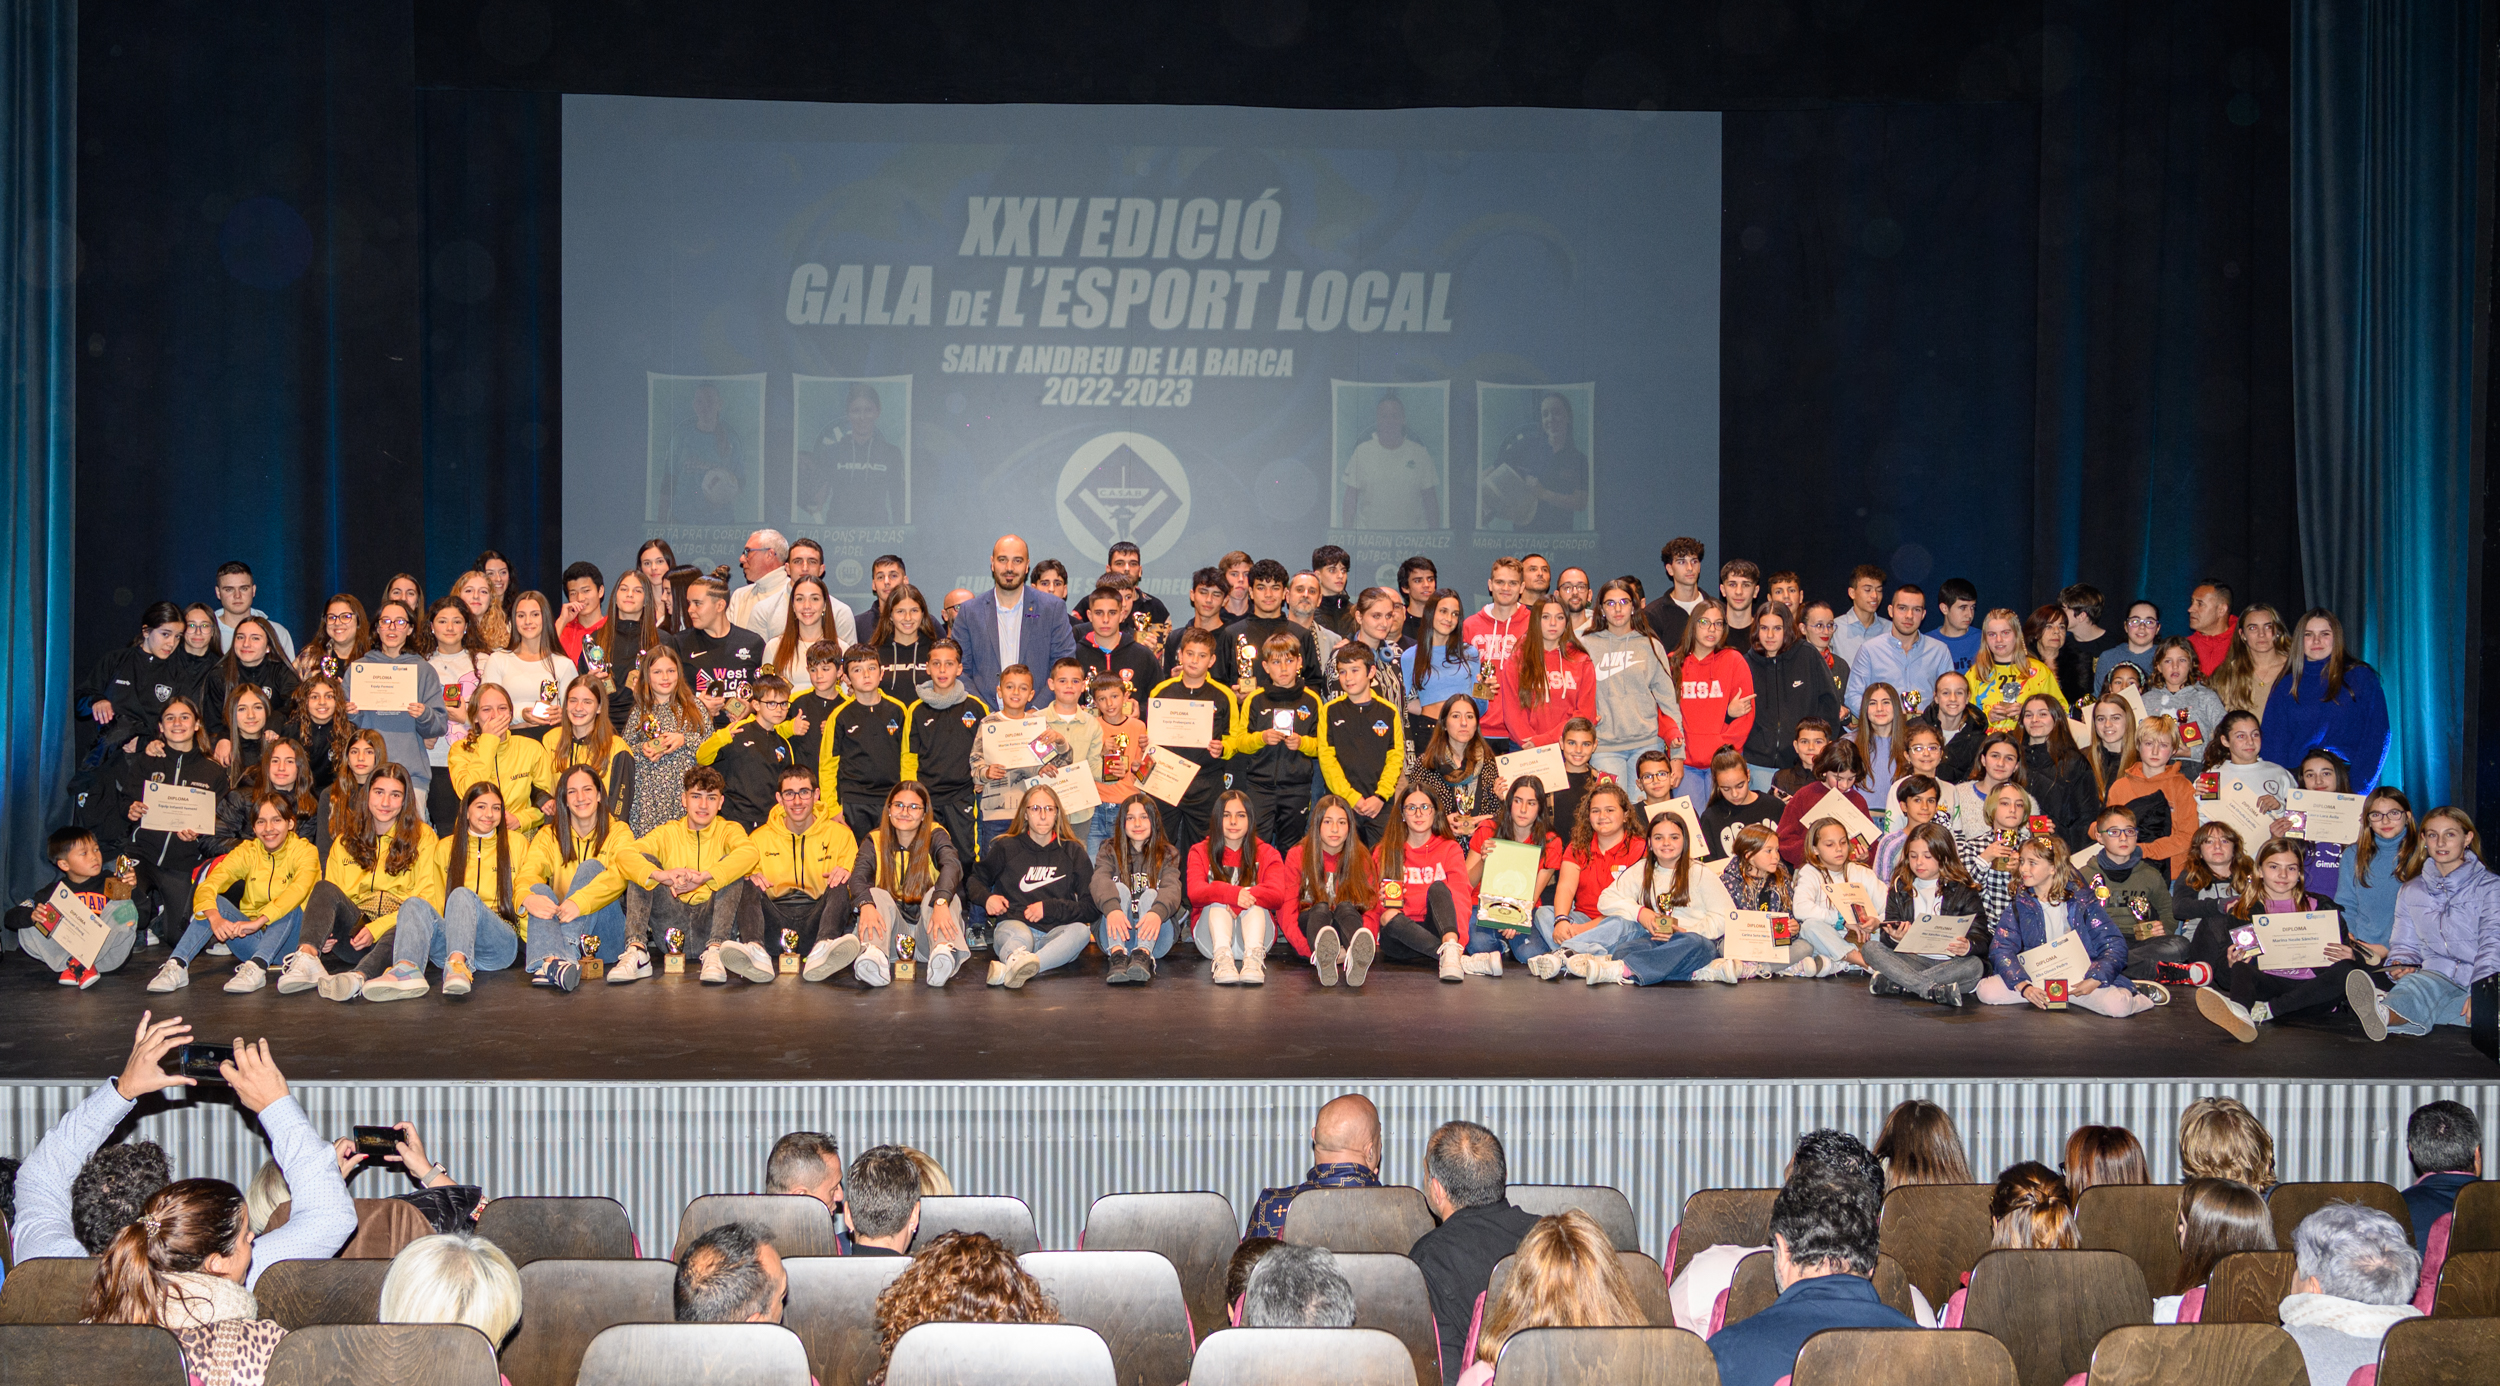 Irati Marín, Ghofran El Khayaty, Maria Castaño i Juanjo Querol, guanyadors dels Premis de l'Esport Local